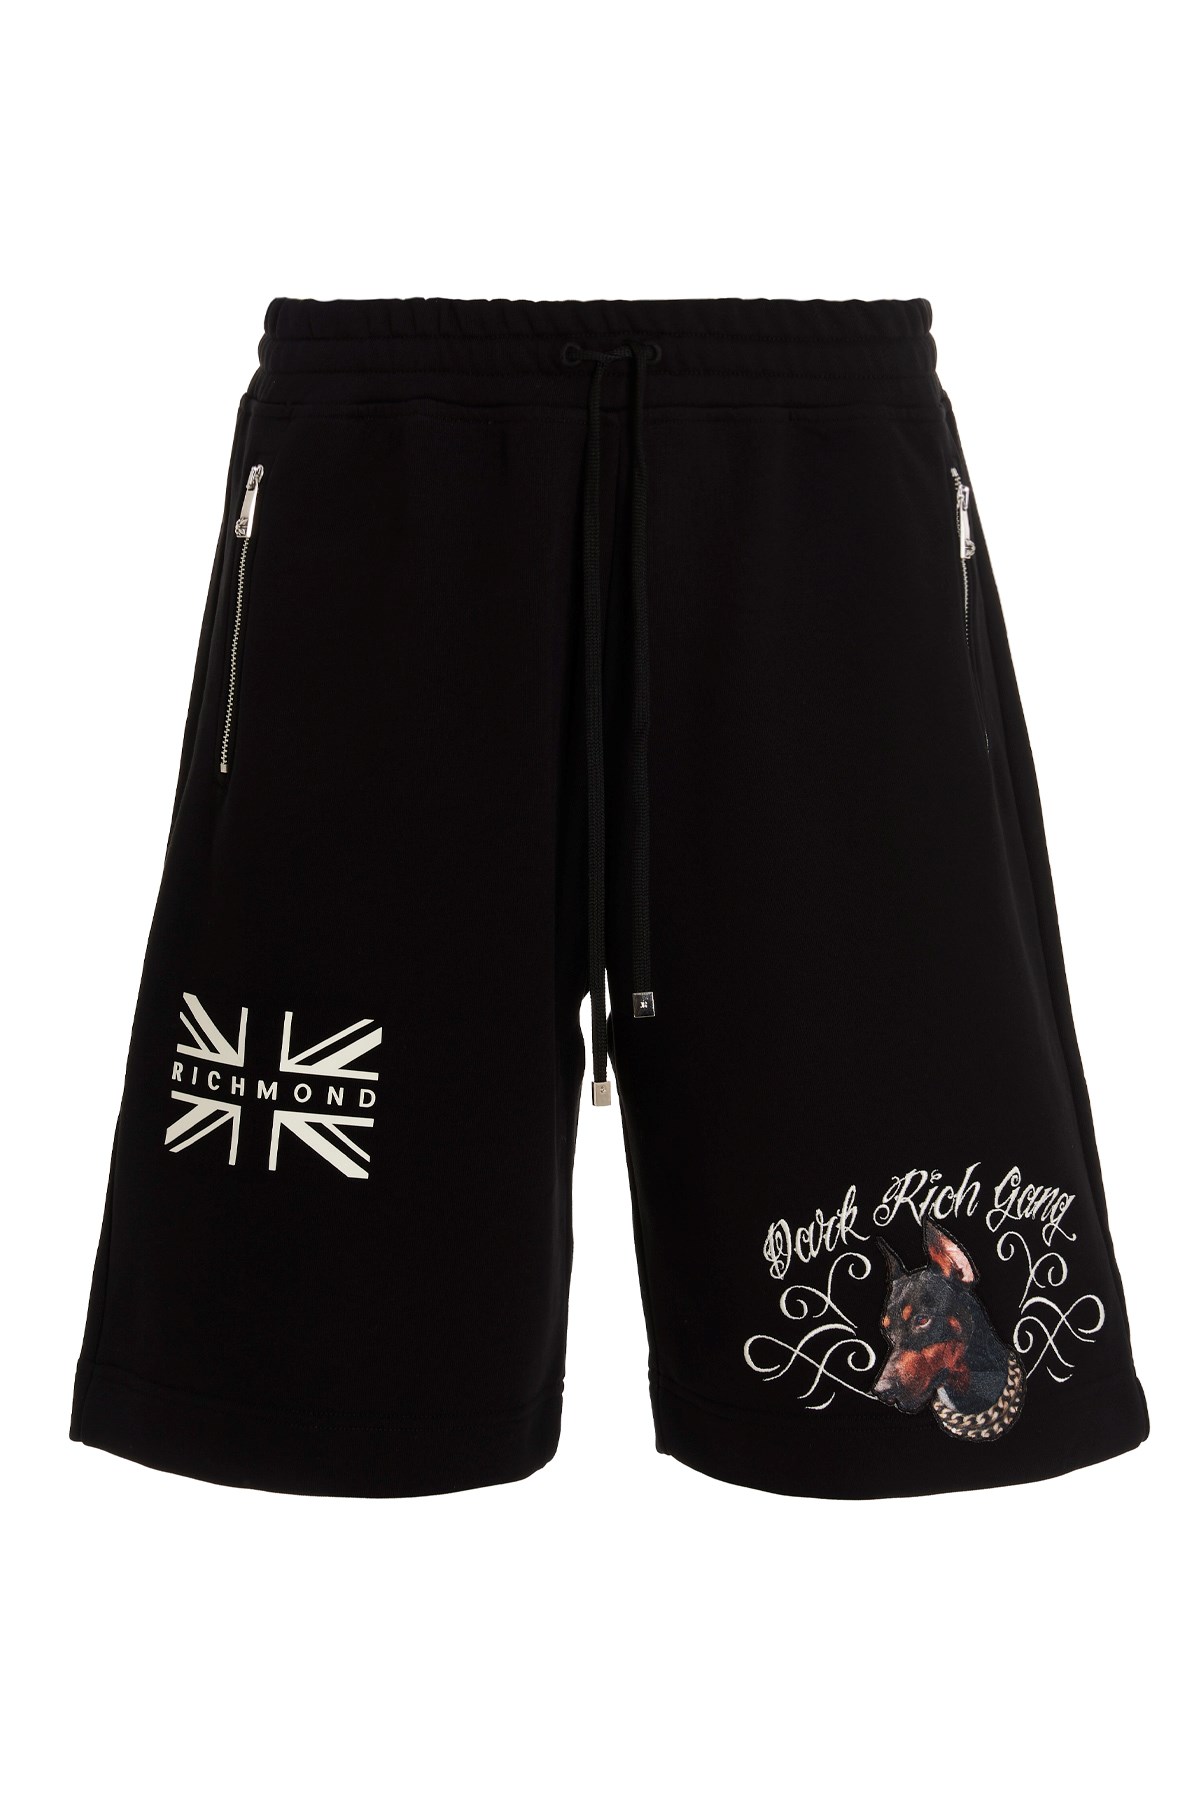 RICHMOND Bermuda-Shorts Von Richmond In Kollab. Mit Dark Polo Gang